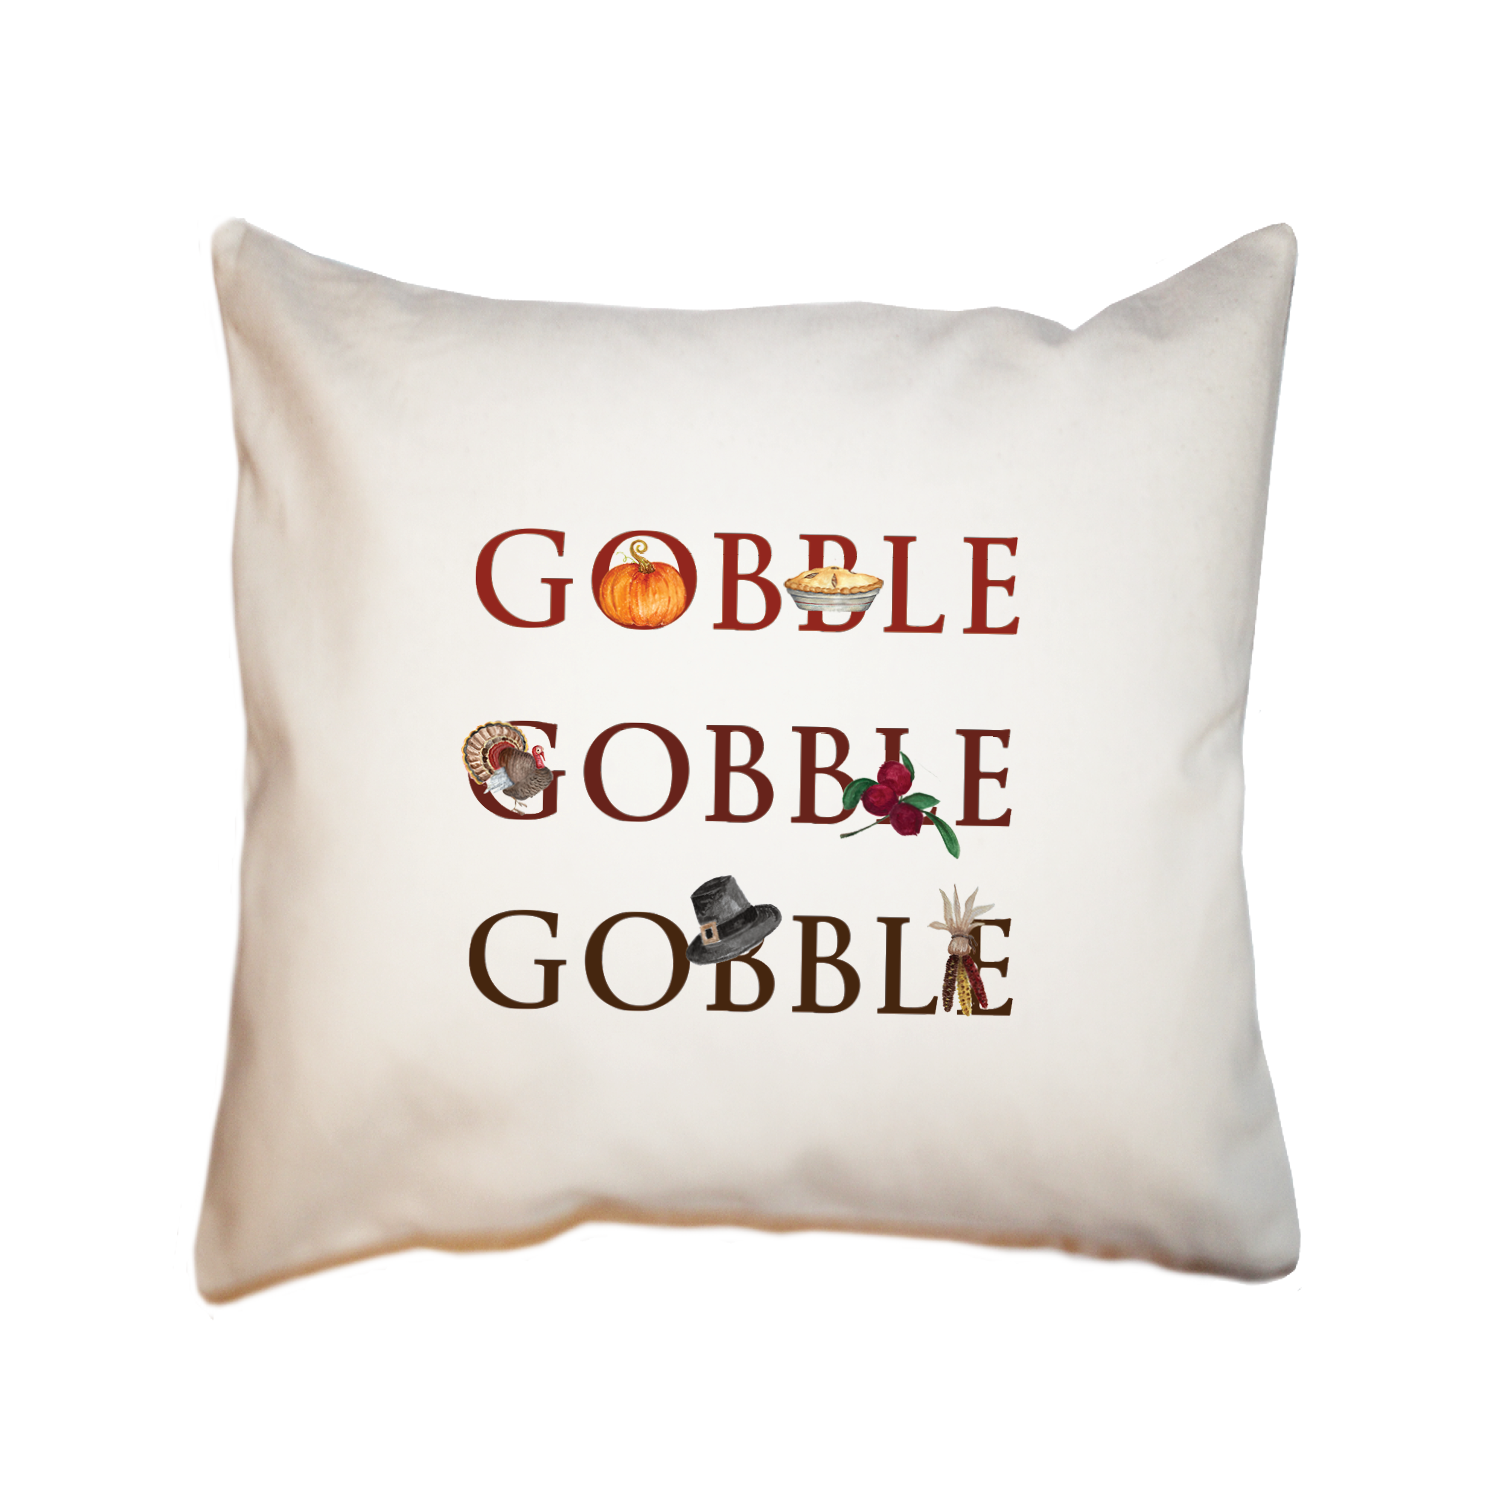 gobble gobble gobble square pillow